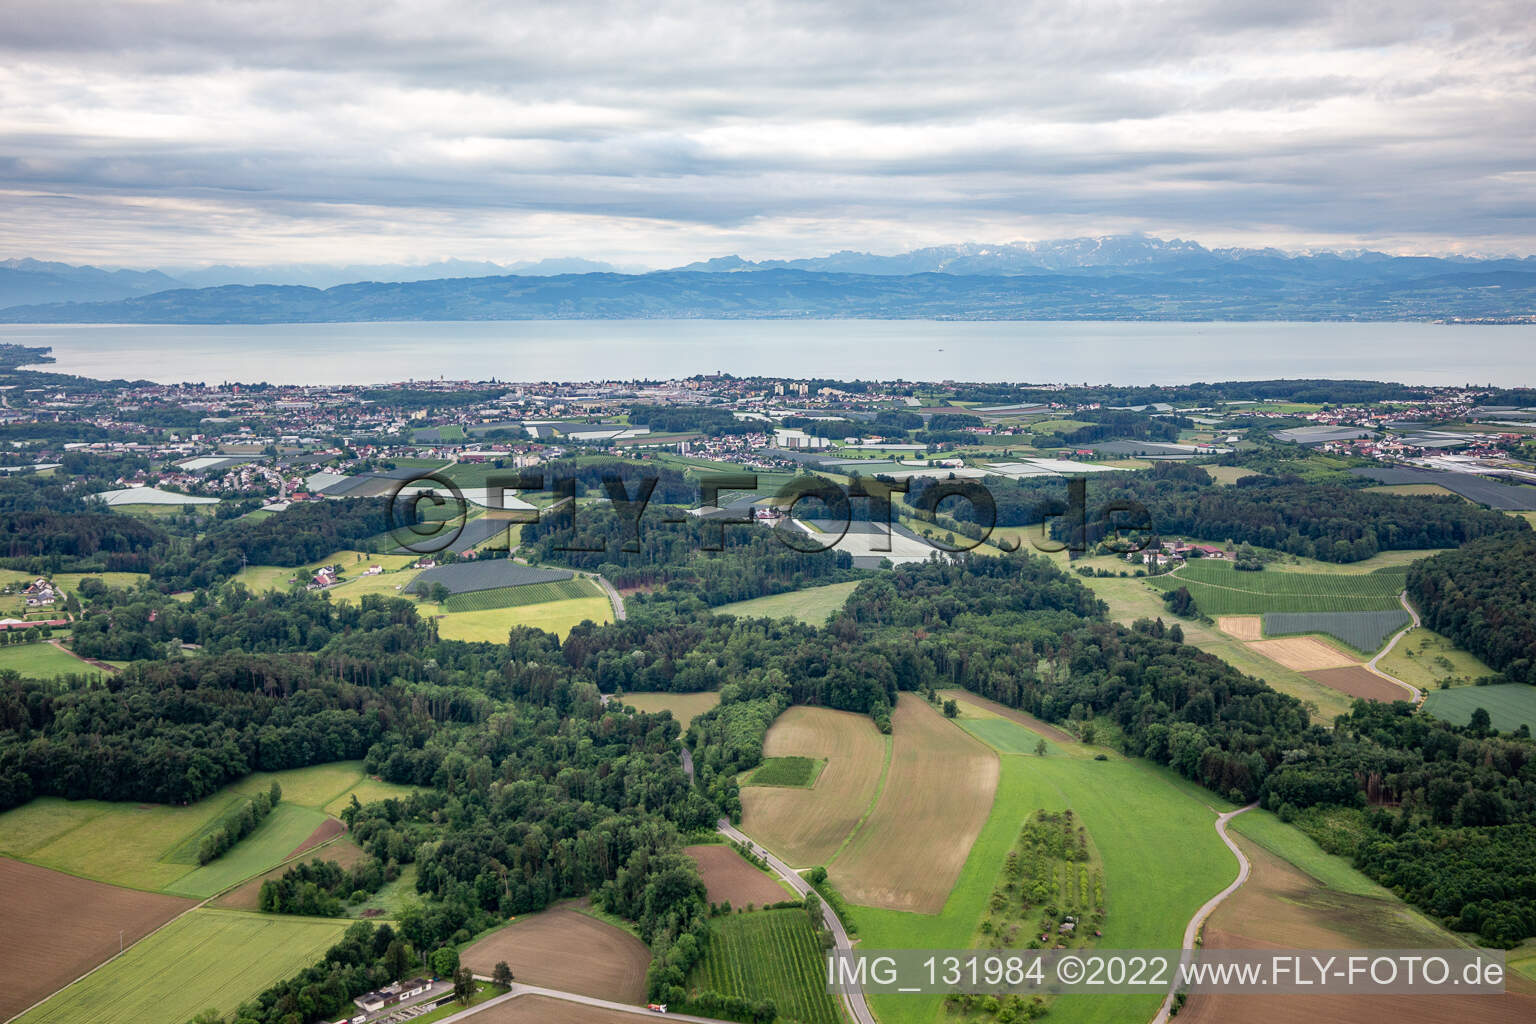 Luftbild von Bodenseepanorama von Friedrichshafen im Bundesland Baden-Württemberg, Deutschland